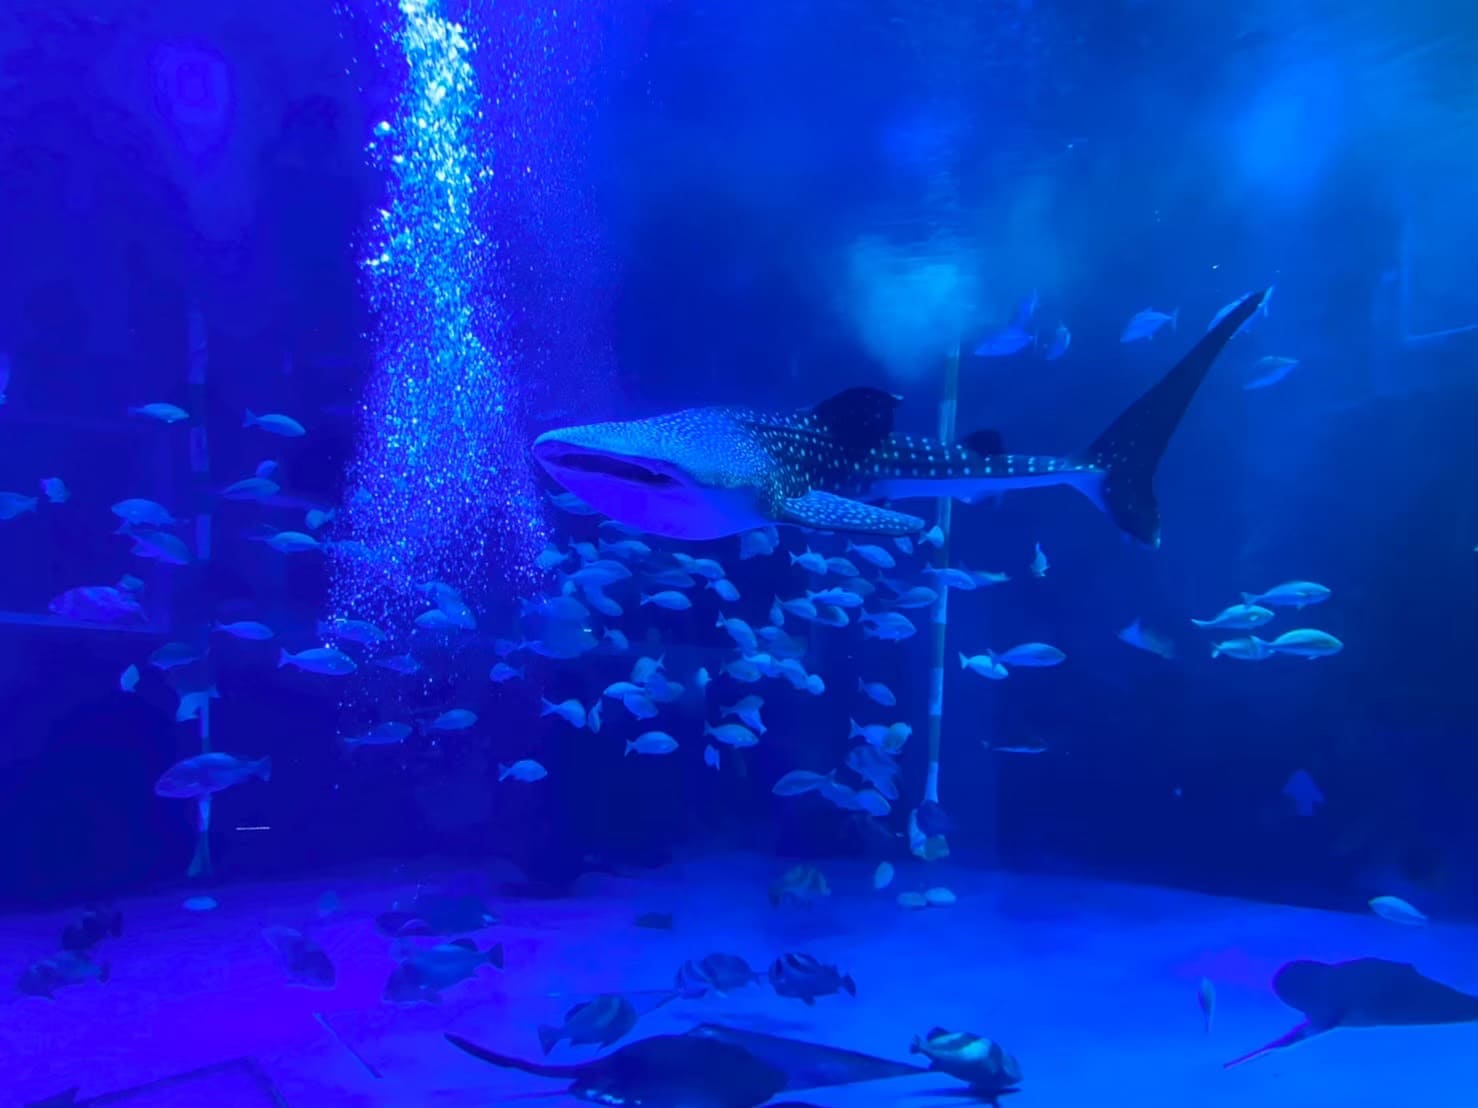 のとじま水族館で2匹のジンベエザメをあらゆる角度からウォッチング！〜世界最大の魚を”上から”見たことはありますか？〜